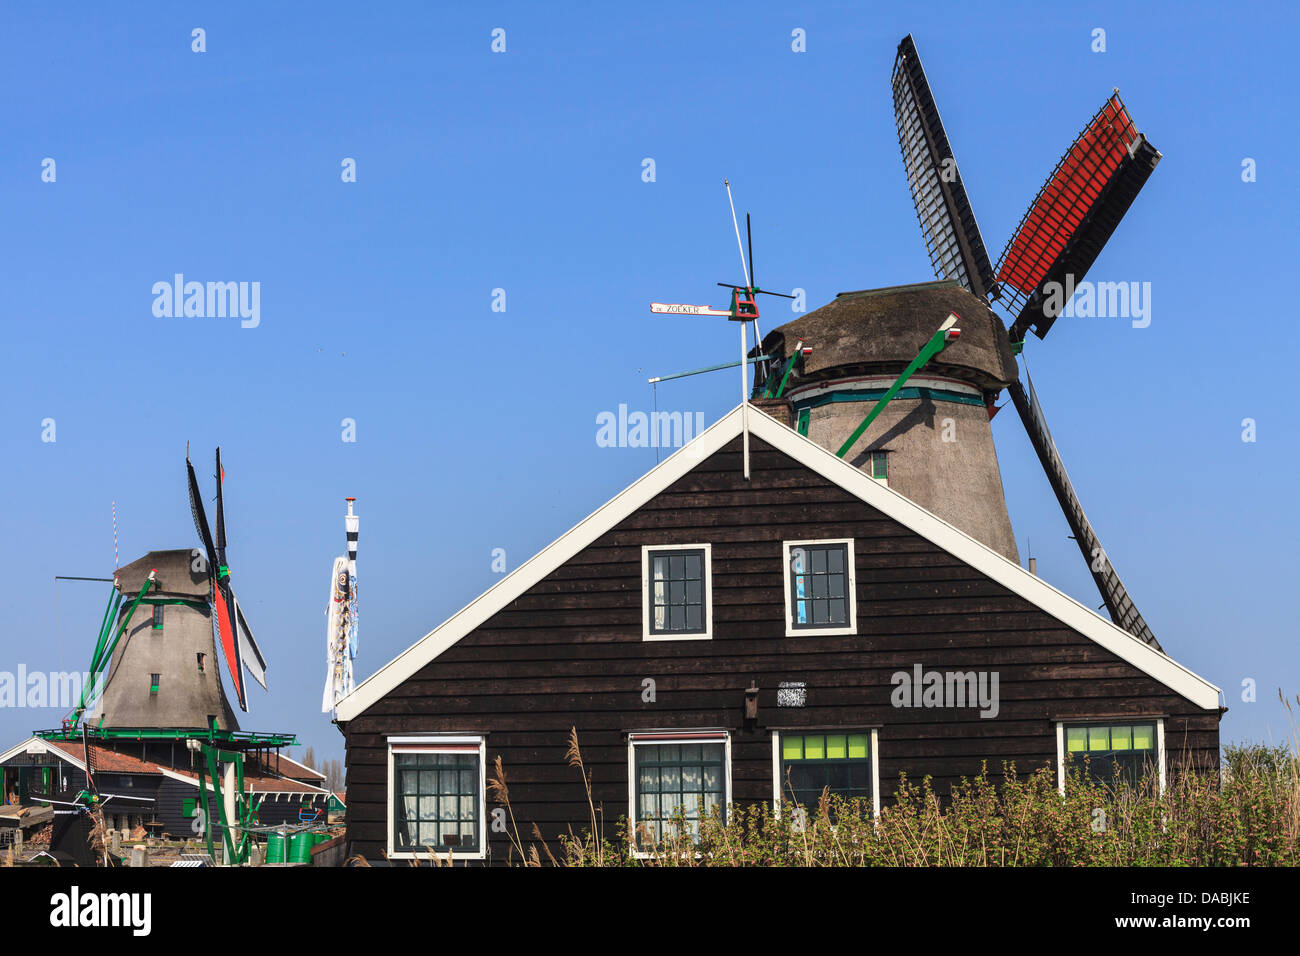 Les moulins à vent historiques et maisons à Zaanse, sur la rivière Zaan, près d'Amsterdam, Amsterdam, Hollande du Nord, Pays-Bas Banque D'Images